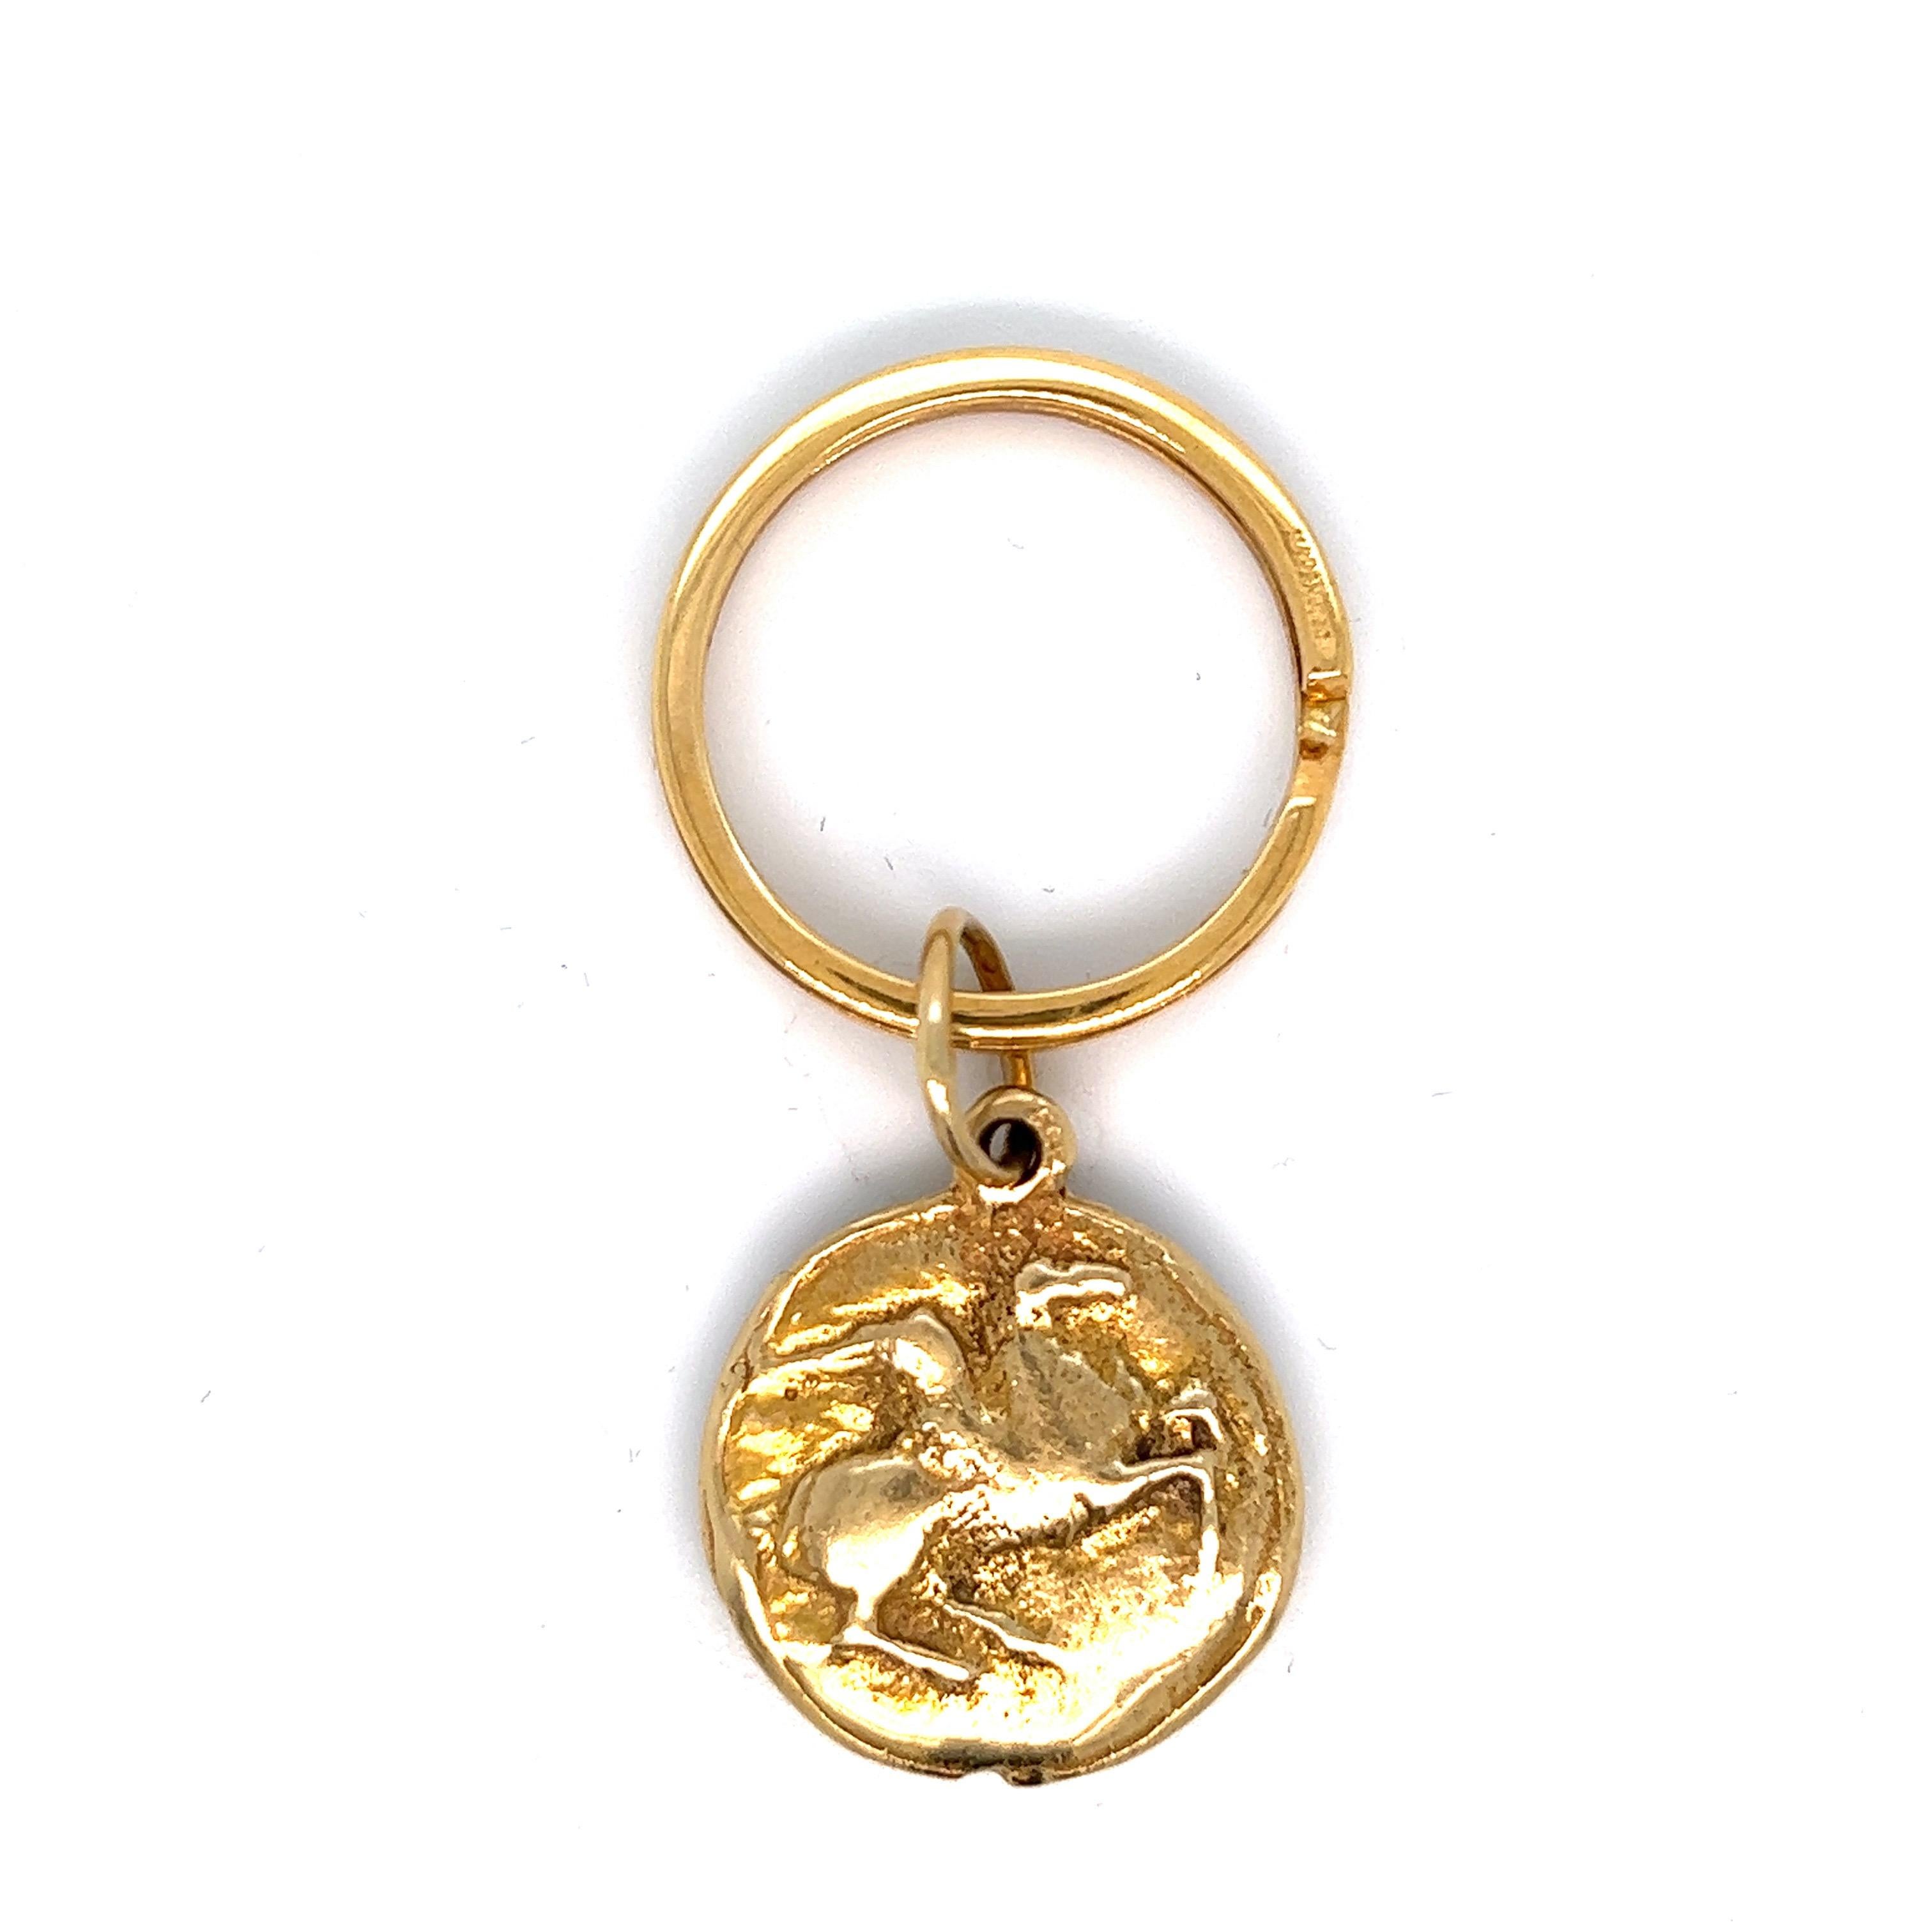 Schlüsselanhänger aus Goldmünzen; geprägt 504 VI, 750

Dem Stil von Bvlgari zuzuschreiben, 18 Karat Gelbgold

Größe: Breite 2,4 cm, Länge 2,8 cm
Gesamtgewicht: 27.0 Gramm